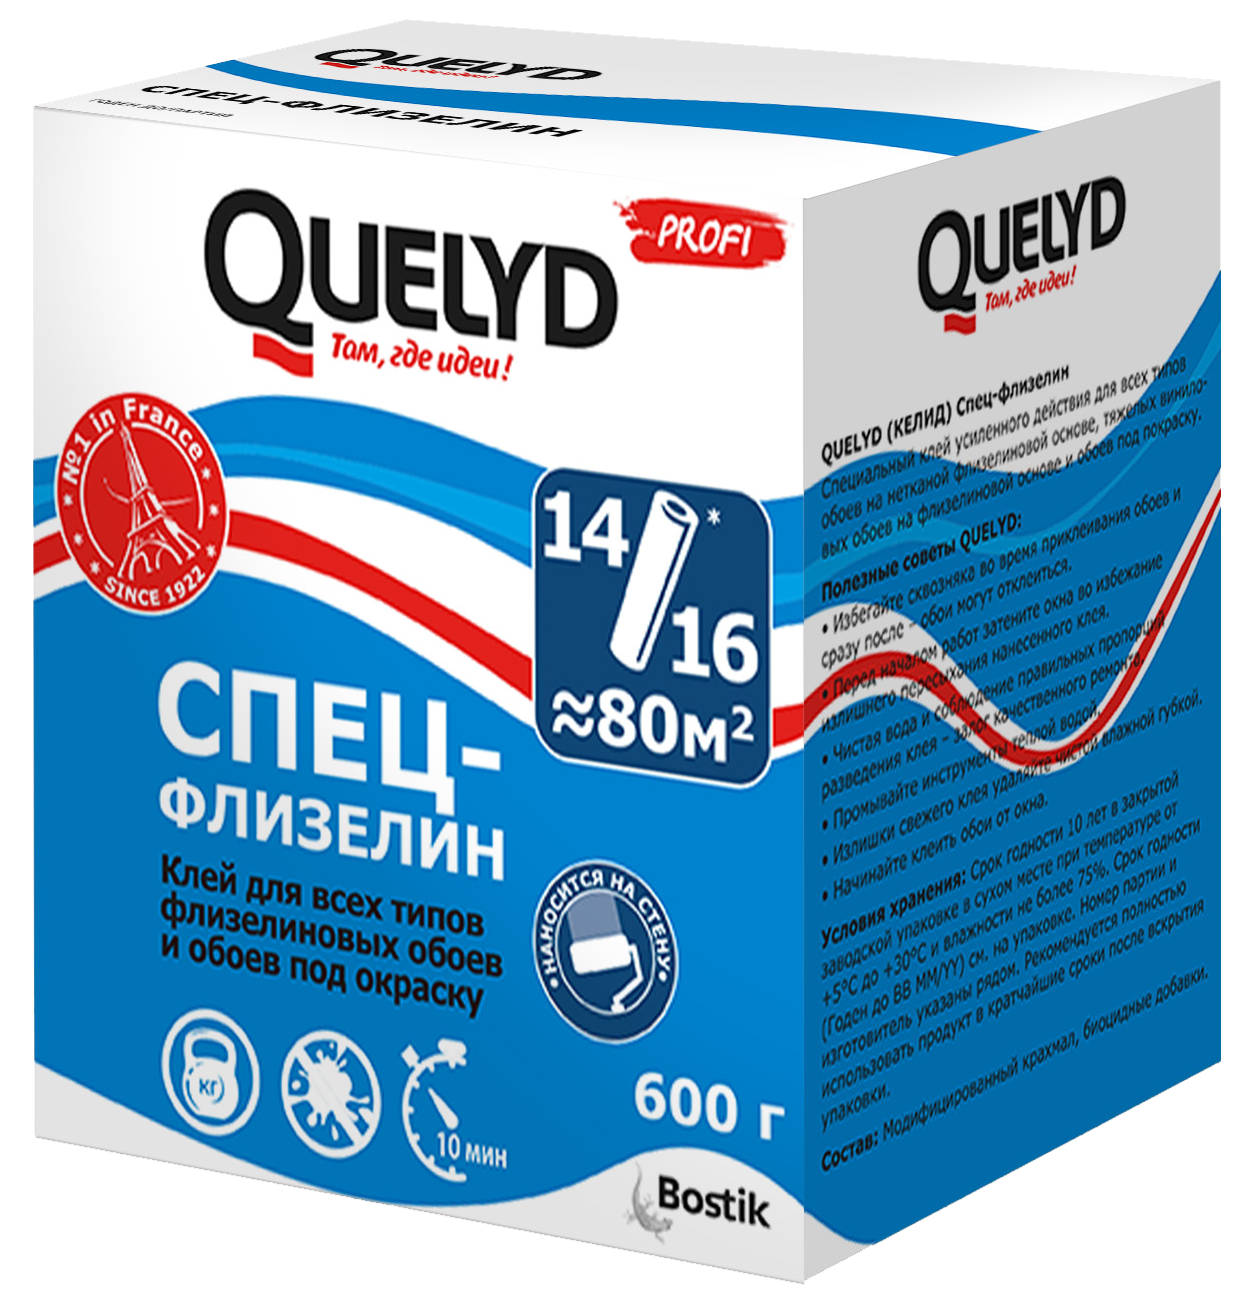  для обоев Quelyd Спец-флизелин 0.6 кг ️  по цене 890 ₽/шт. в .